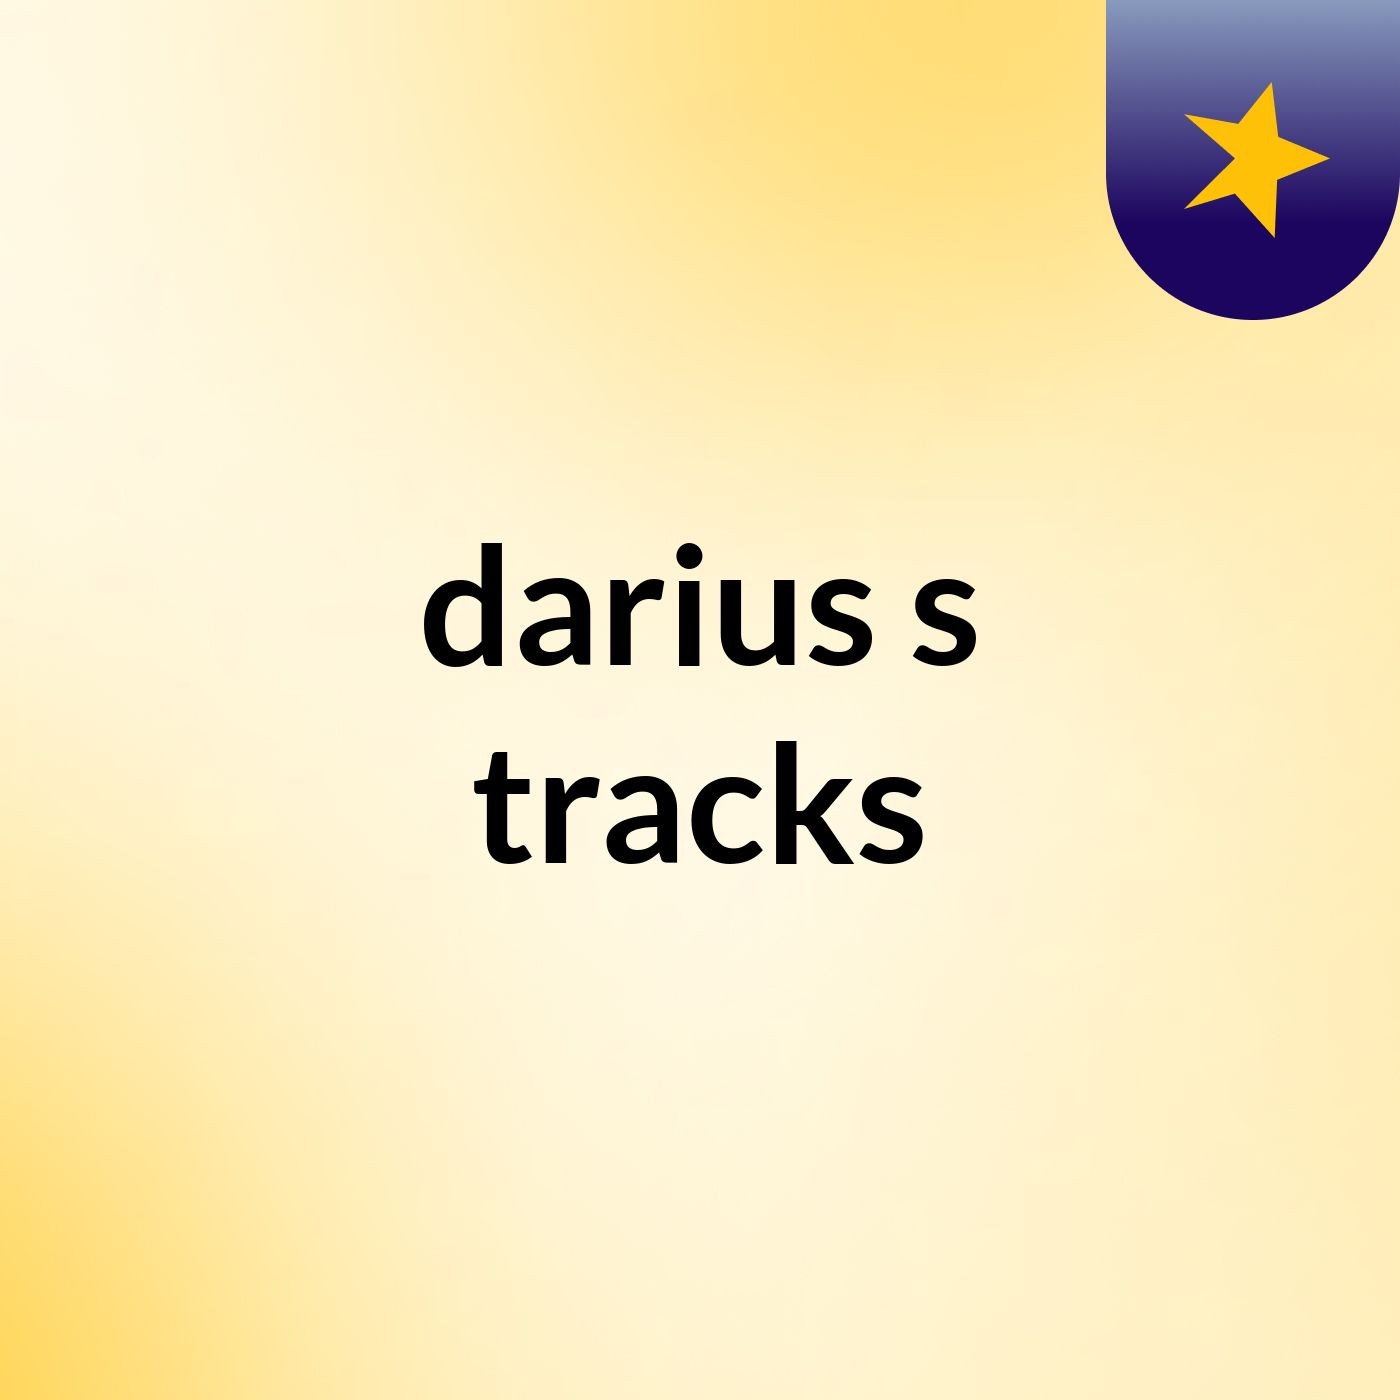 darius's tracks